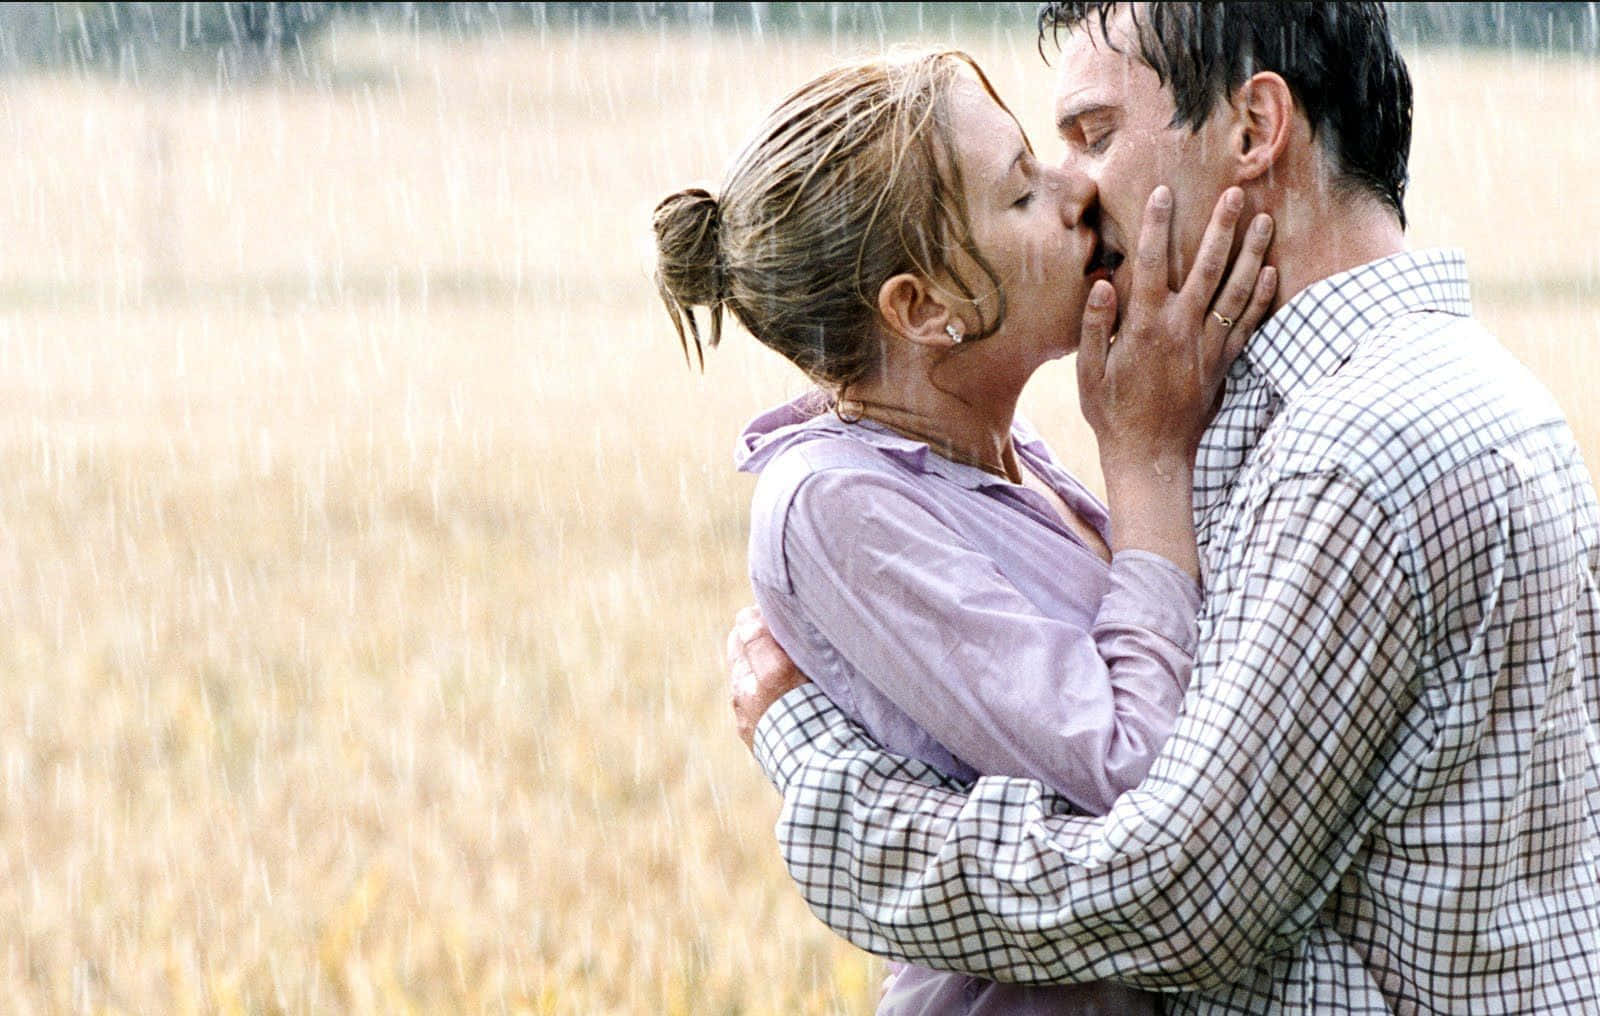 A romantic moment beneath the rain.